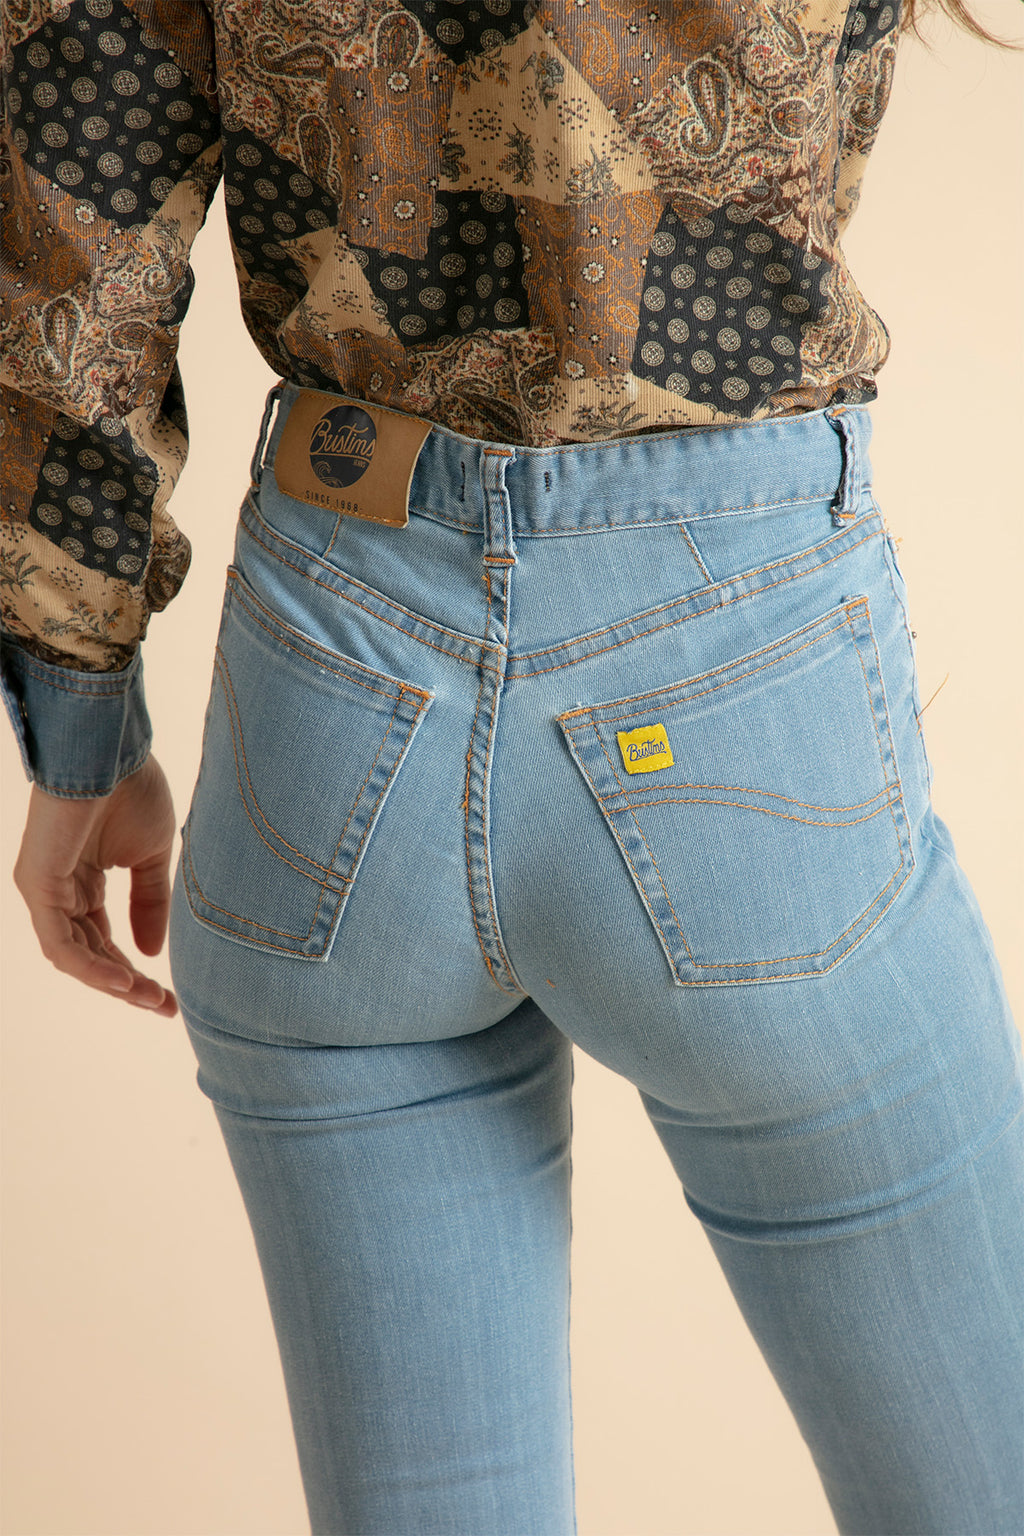 Pantalones Vaqueros Rectos de Mujer – Bustins Jeans